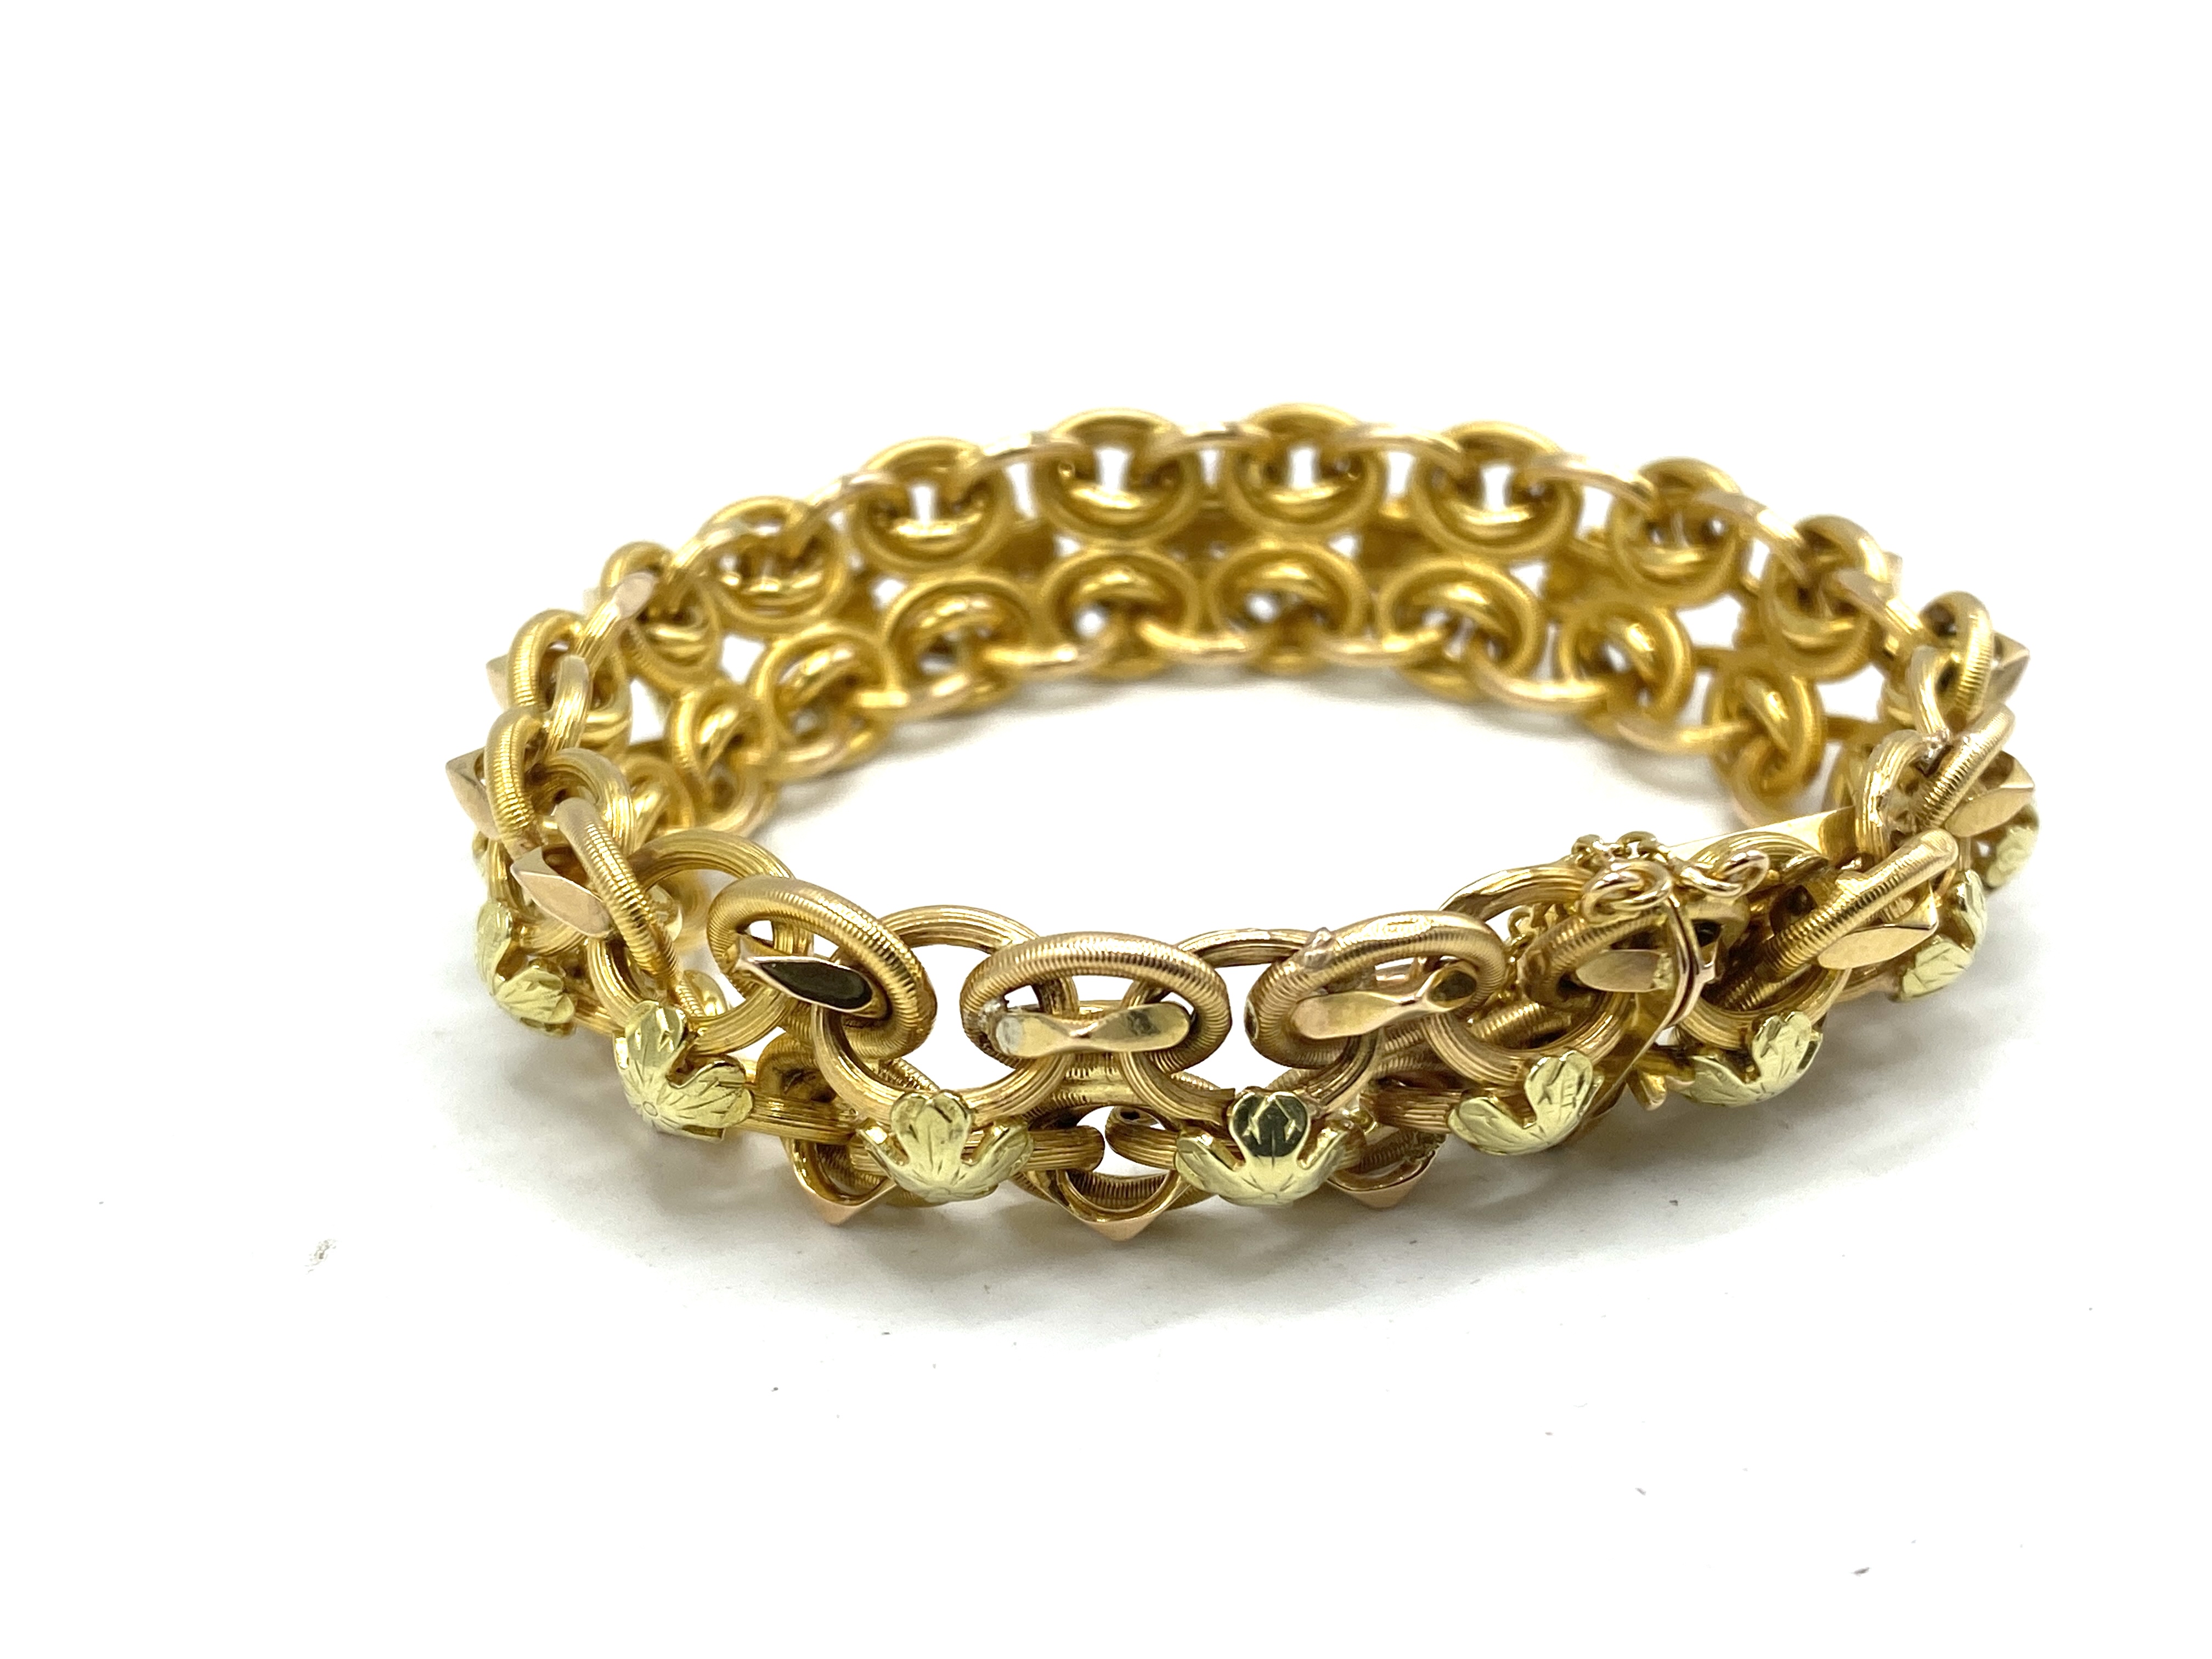 18ct gold bracelet - Image 2 of 3